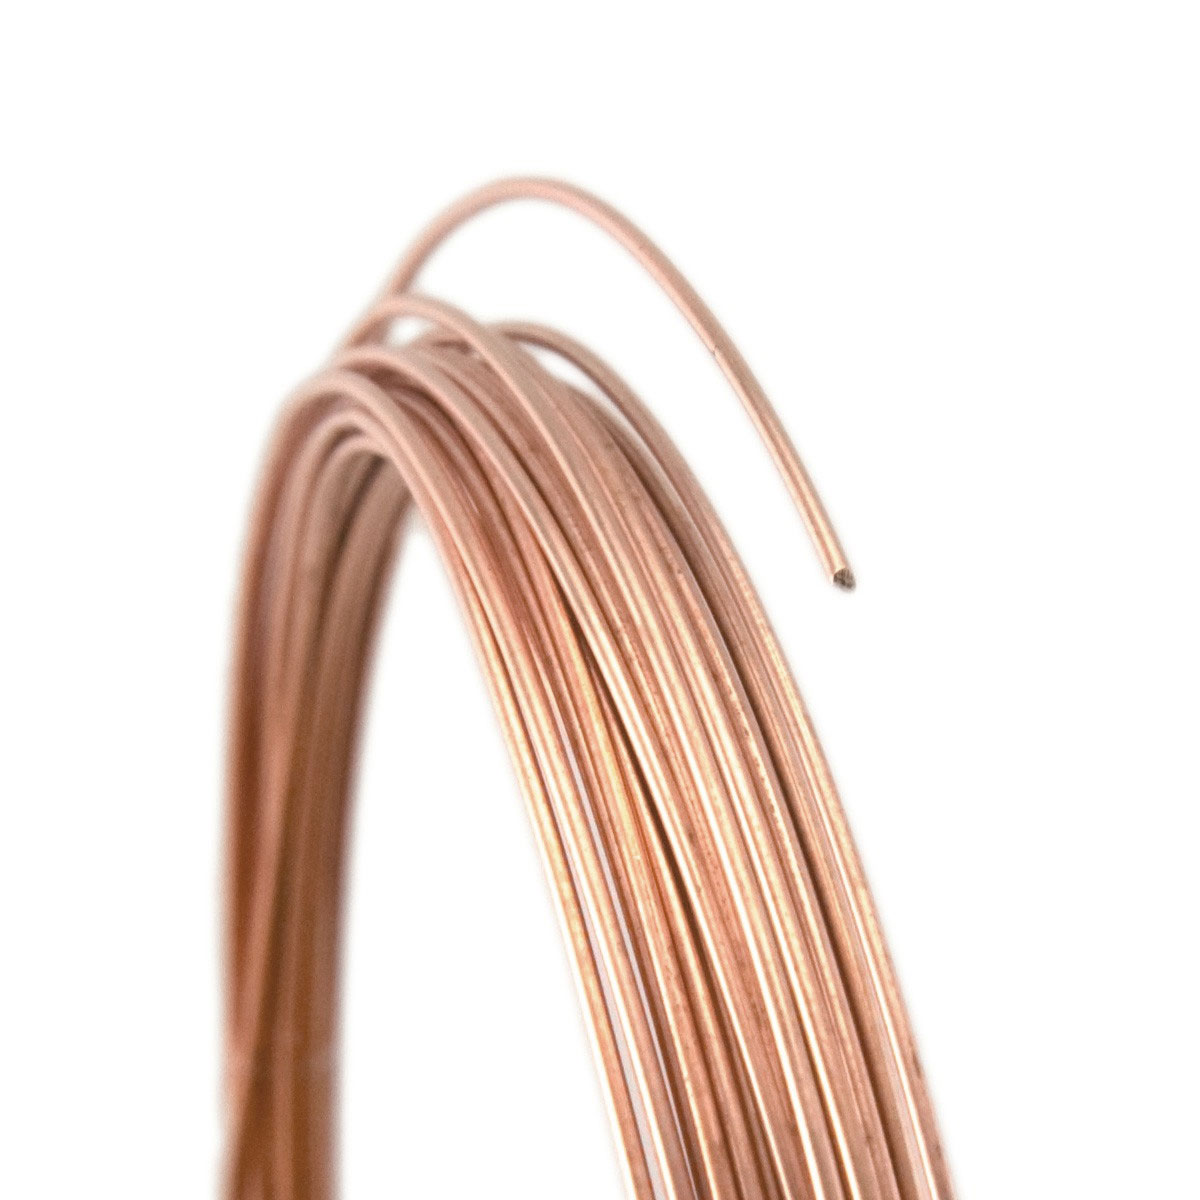 22 Gauge Round Half Hard Copper Wire 5FT 